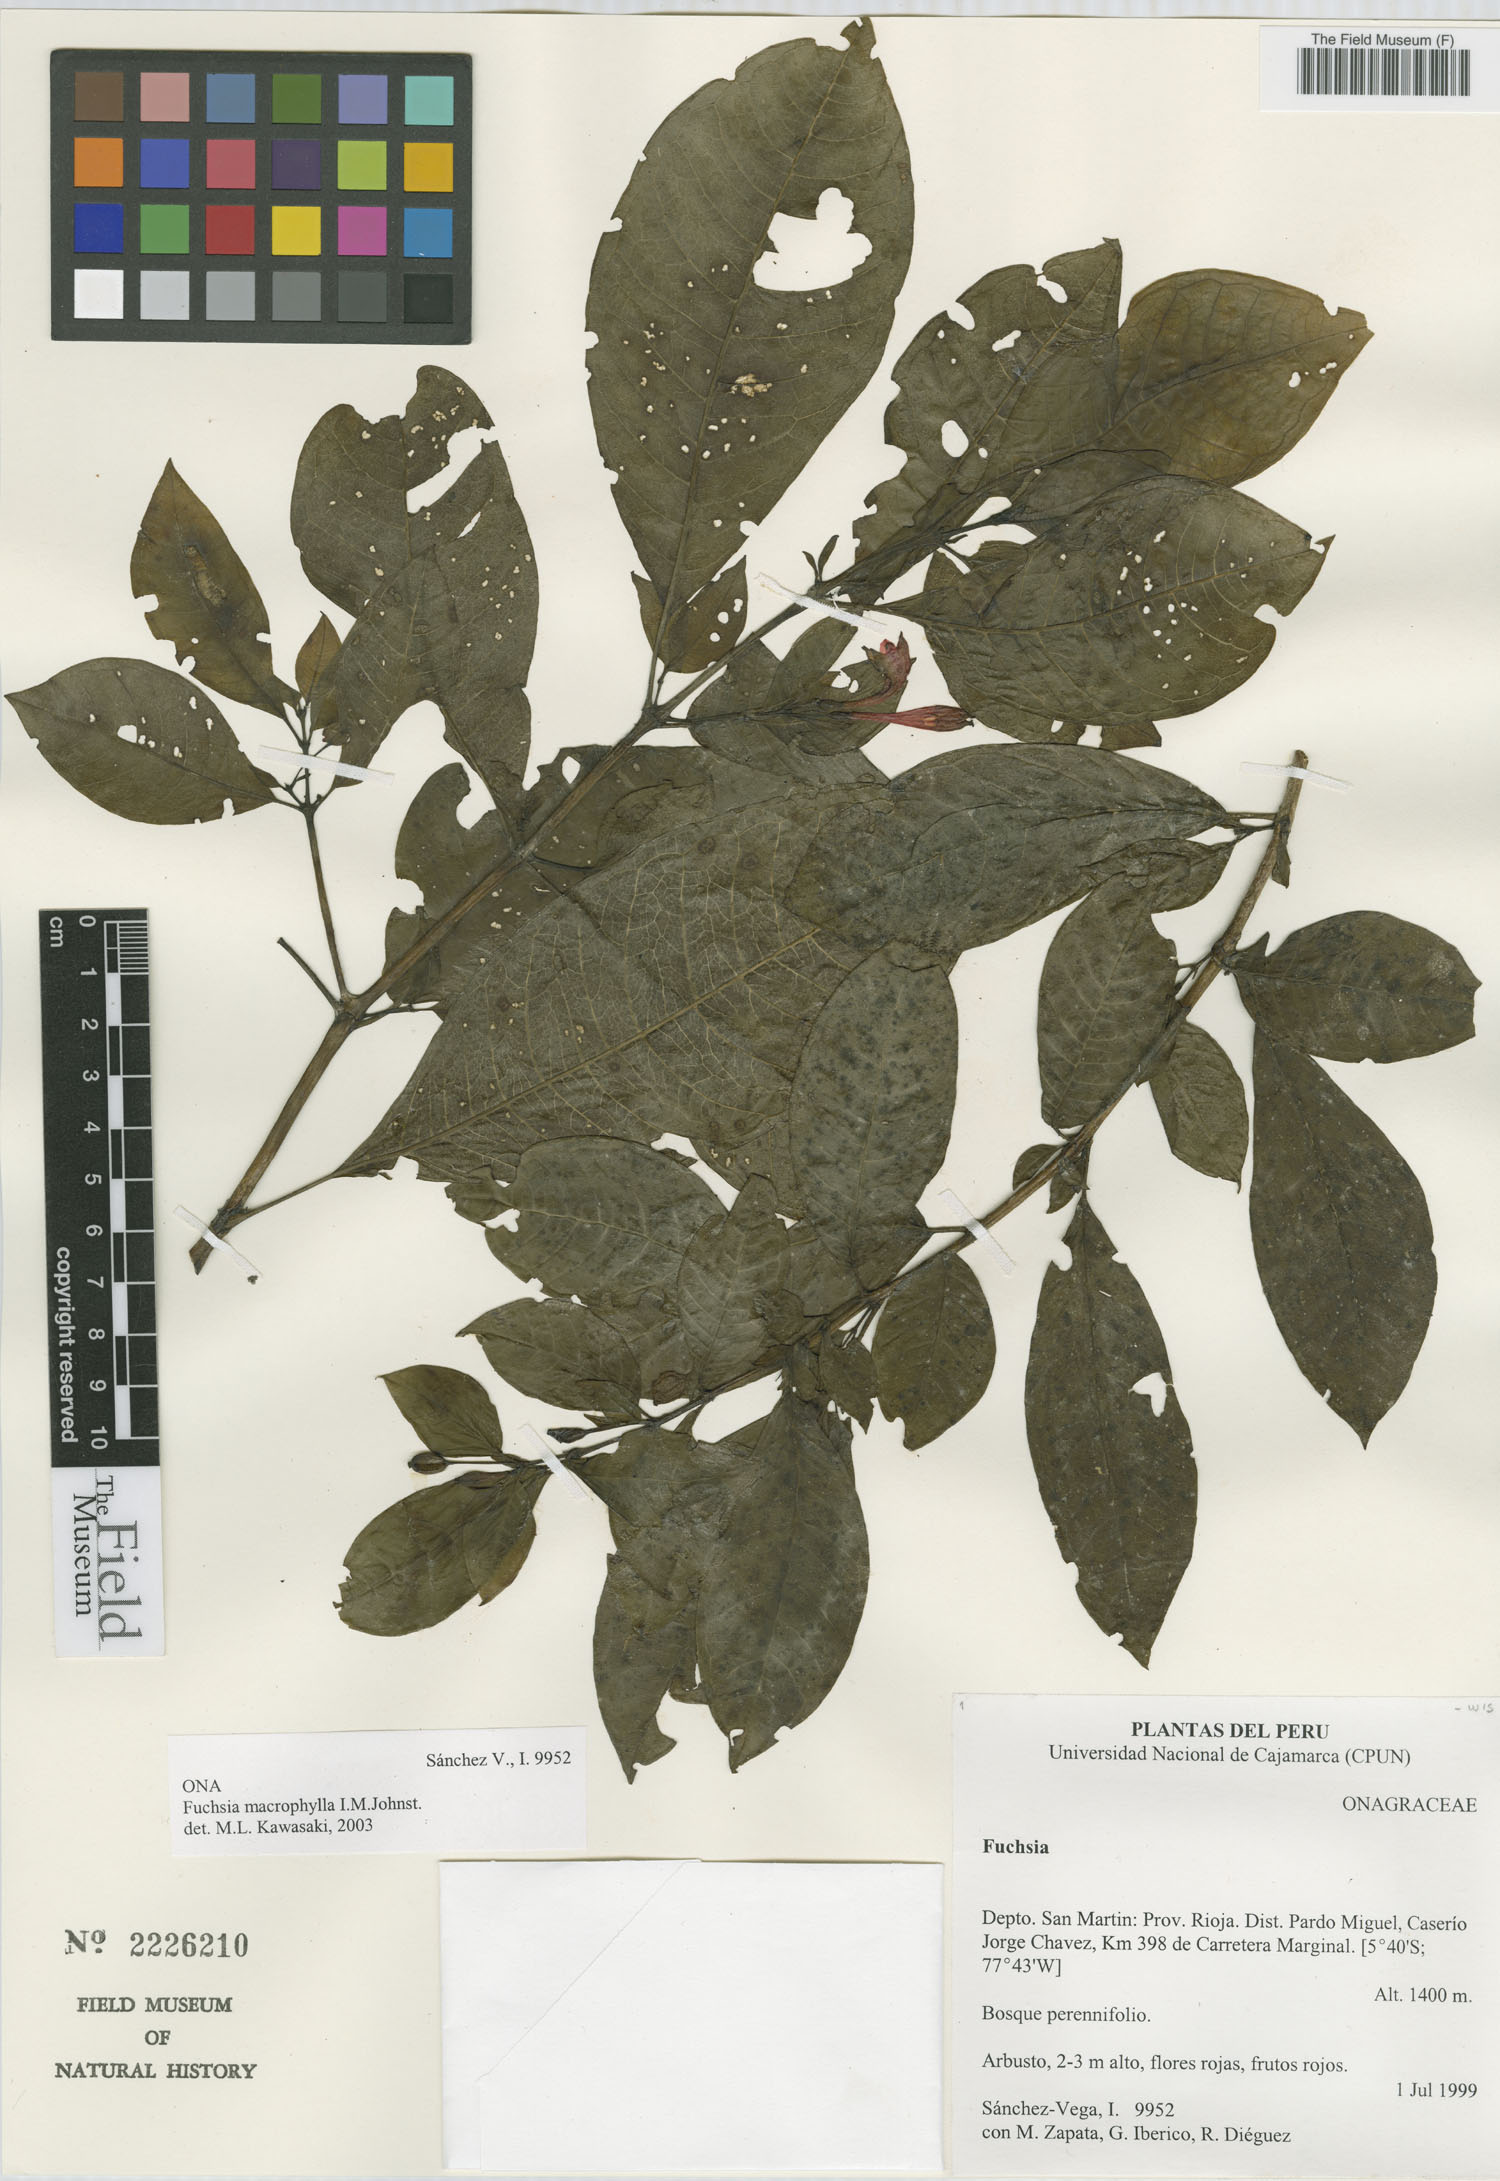 Fuchsia macrophylla image